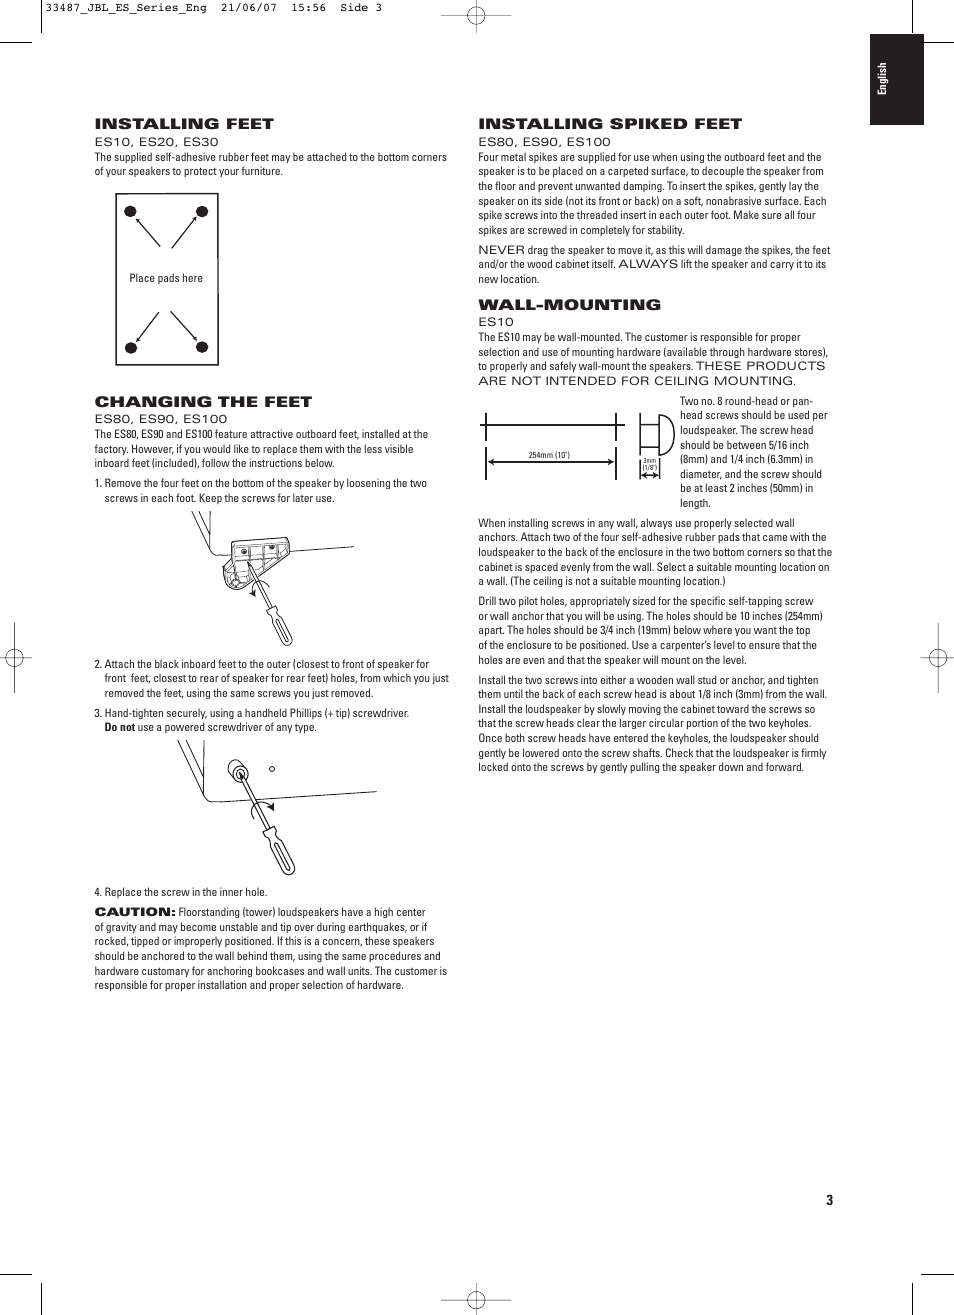 JBL ES20 User Manual | Page 3 / 6 | Original mode | Also for: ES30, ES80,  ES10, ES90, ES25C, ES100